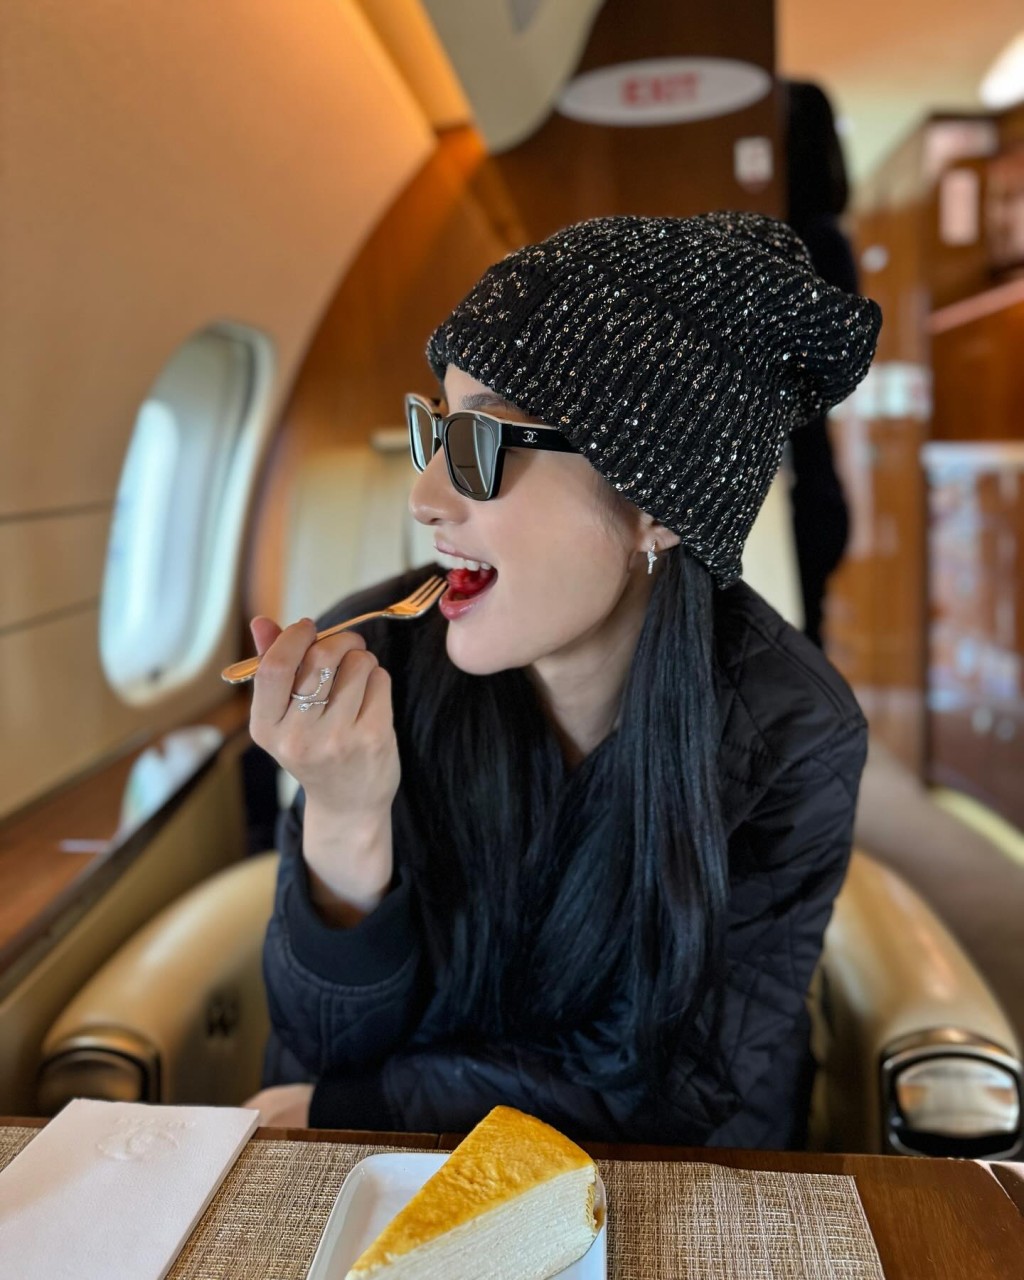 林夏薇在機前及機艙內瘋狂打卡，認真富貴，令不少網民都大嘆羨慕。